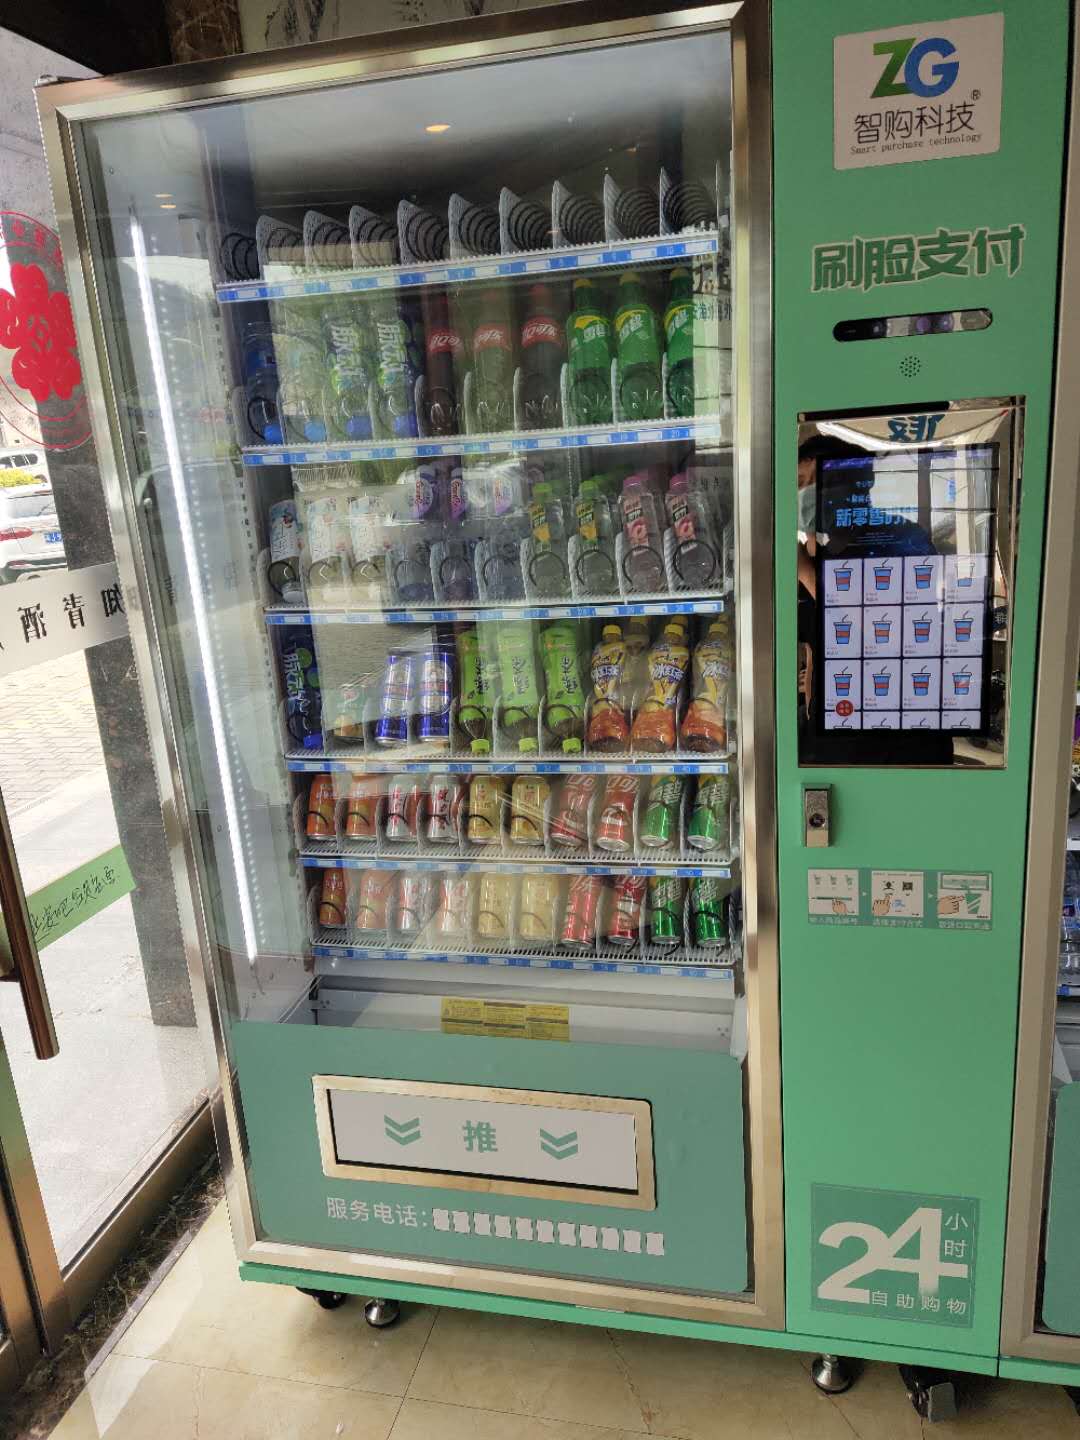 自动售货机无需人工值守饮料自动售货机赚钱么